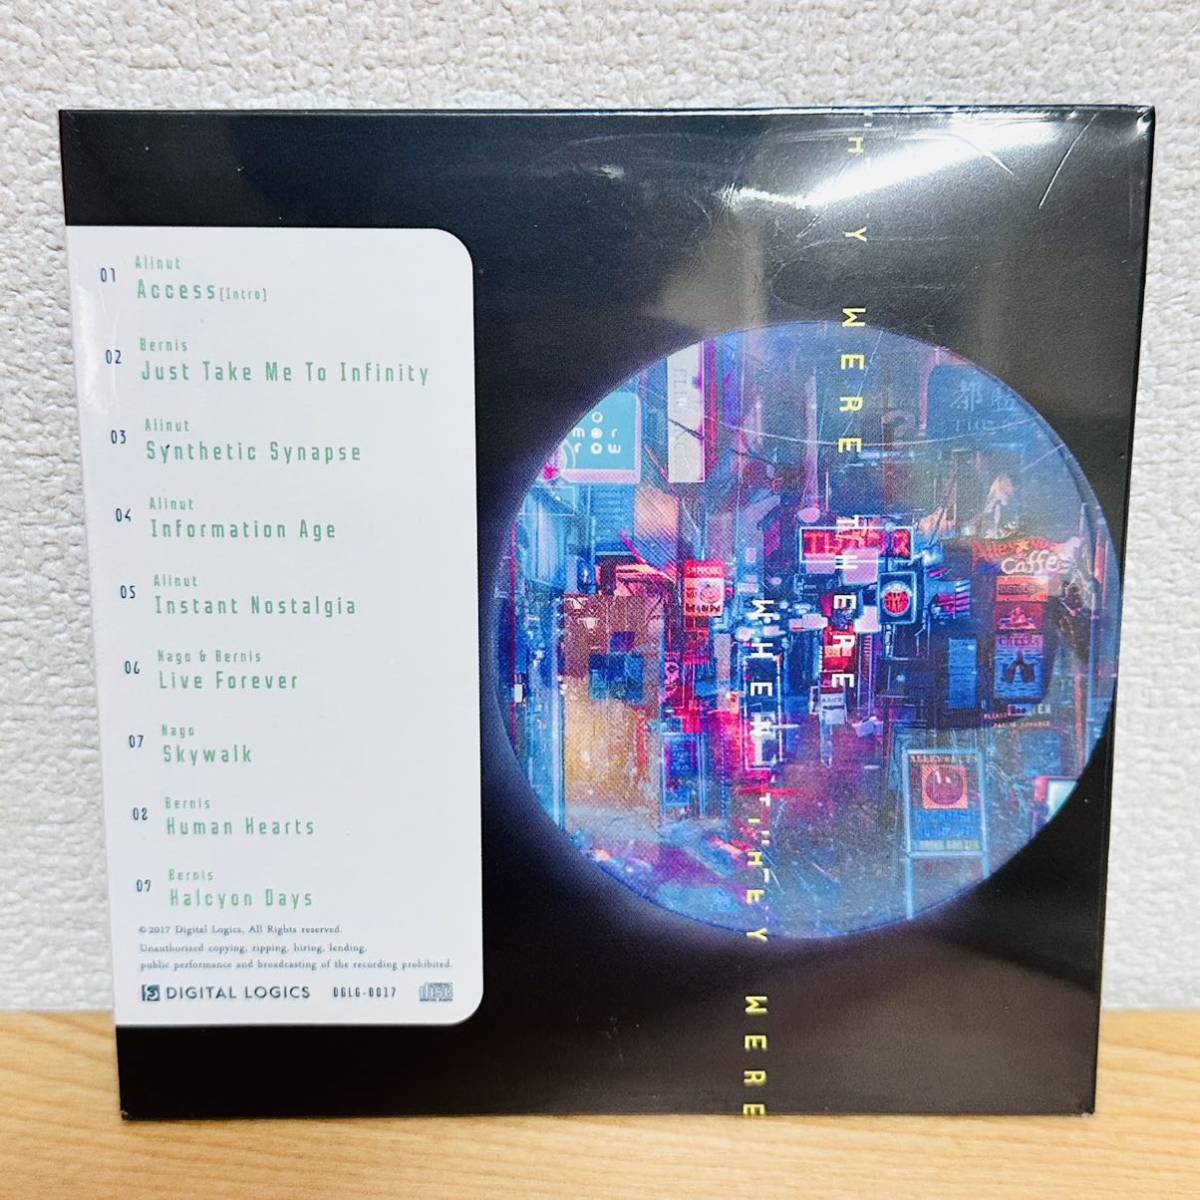 未開封 CD 3枚セット DIGITAL LOGICS WHEN THEY WERE THERE / MILKY WAY / SOLARIS EXPRESS 同人音楽 Trance music Alinut Bernis Nago_画像3